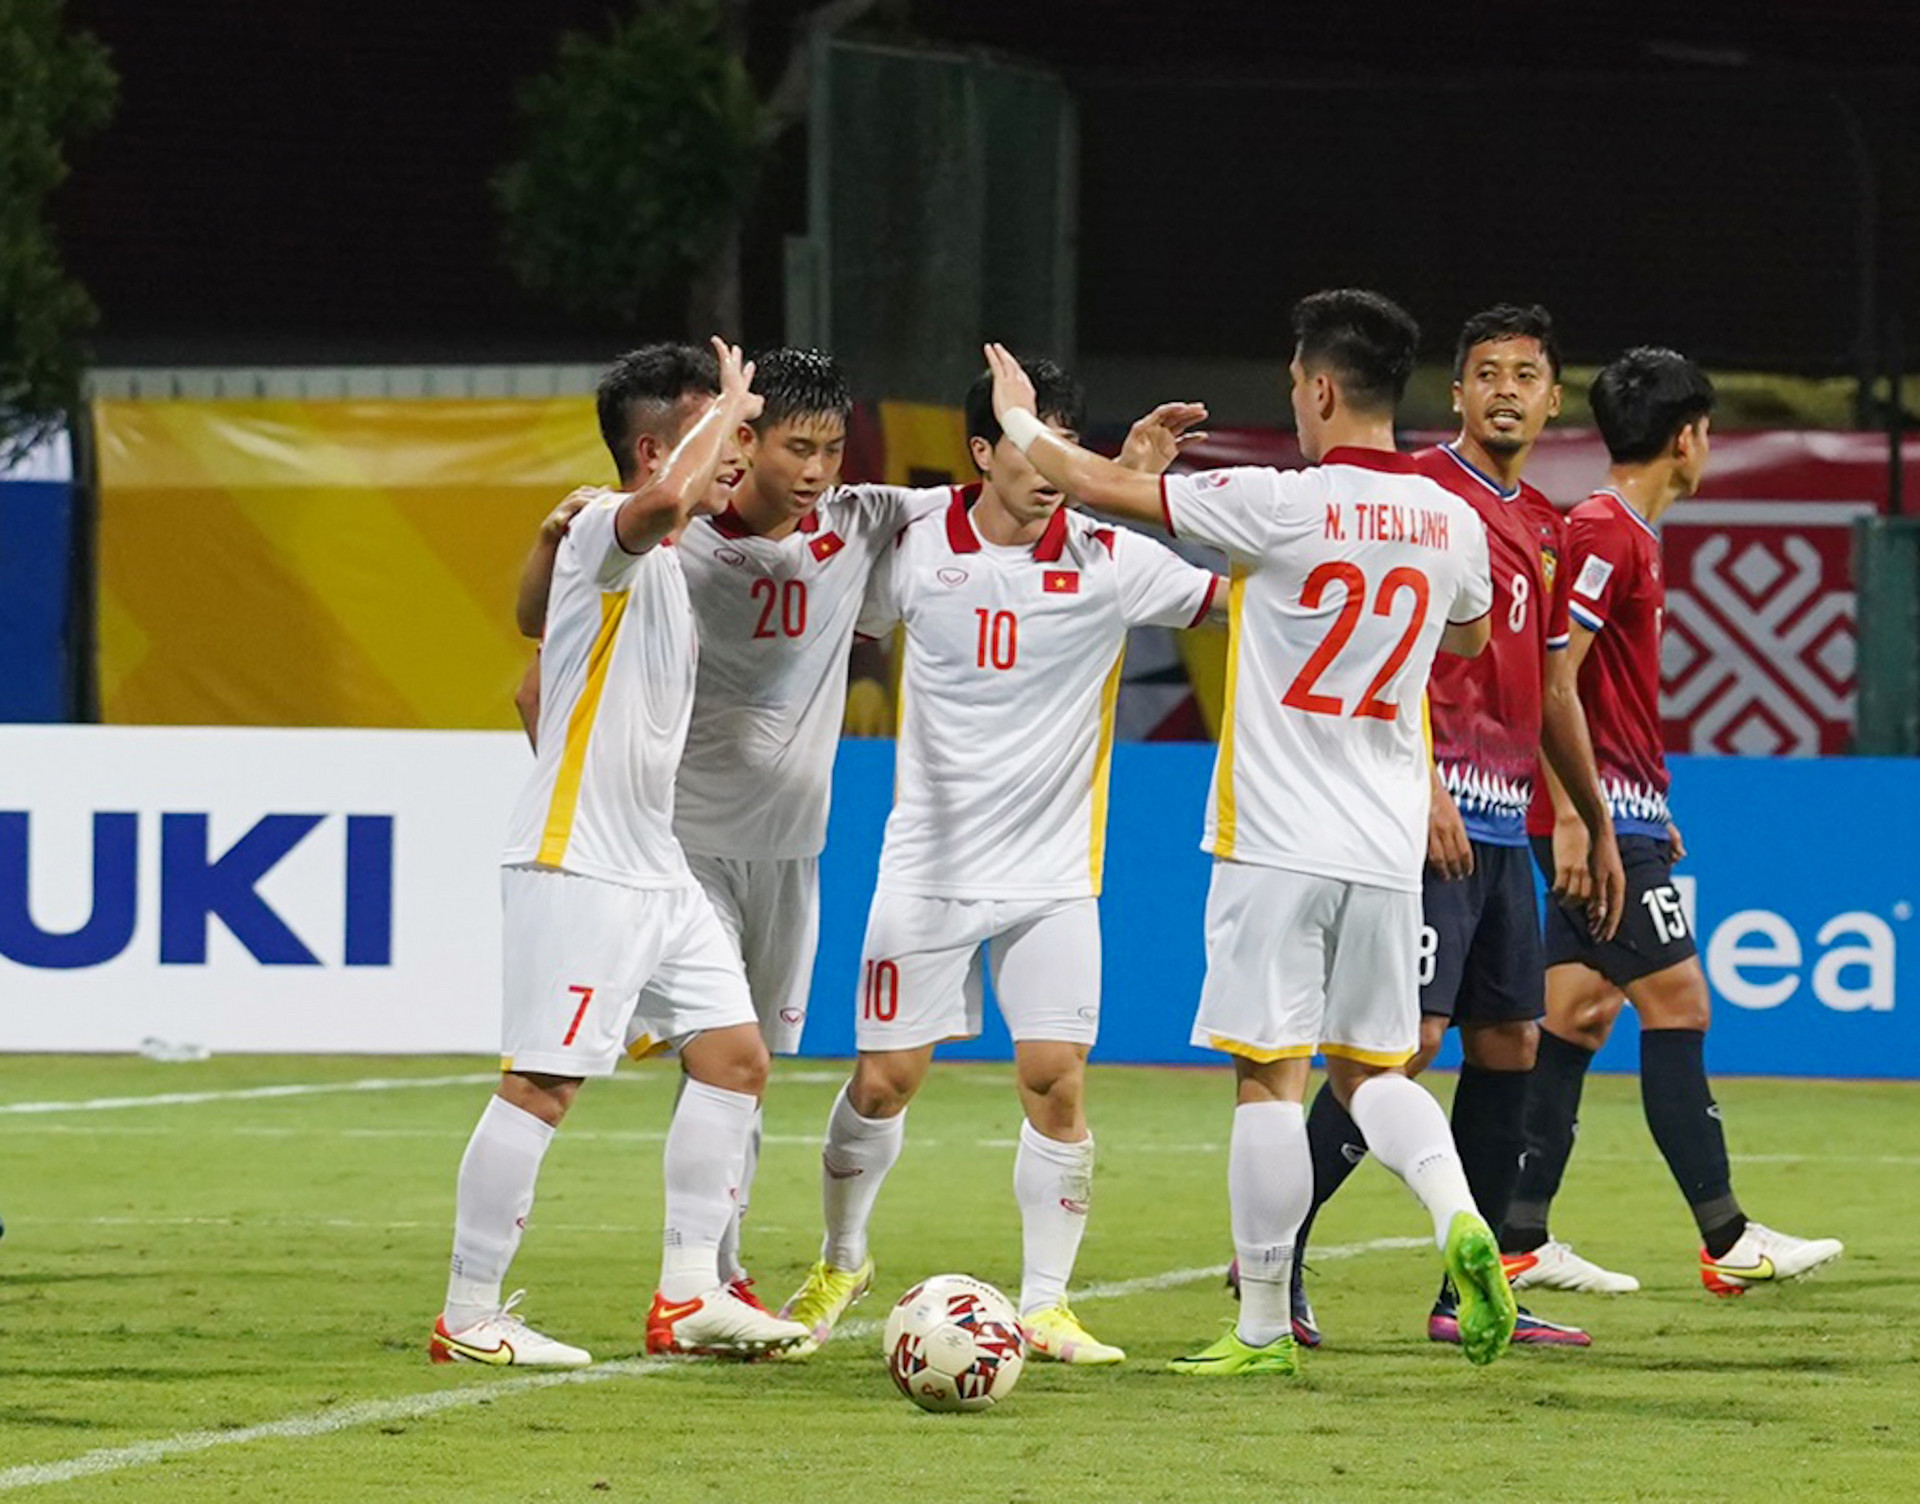 Điểm nhấn Việt Nam 2-0 Lào: Văn Đức trở lại, Nguyên Mạnh chứng tỏ đẳng cấp - 1